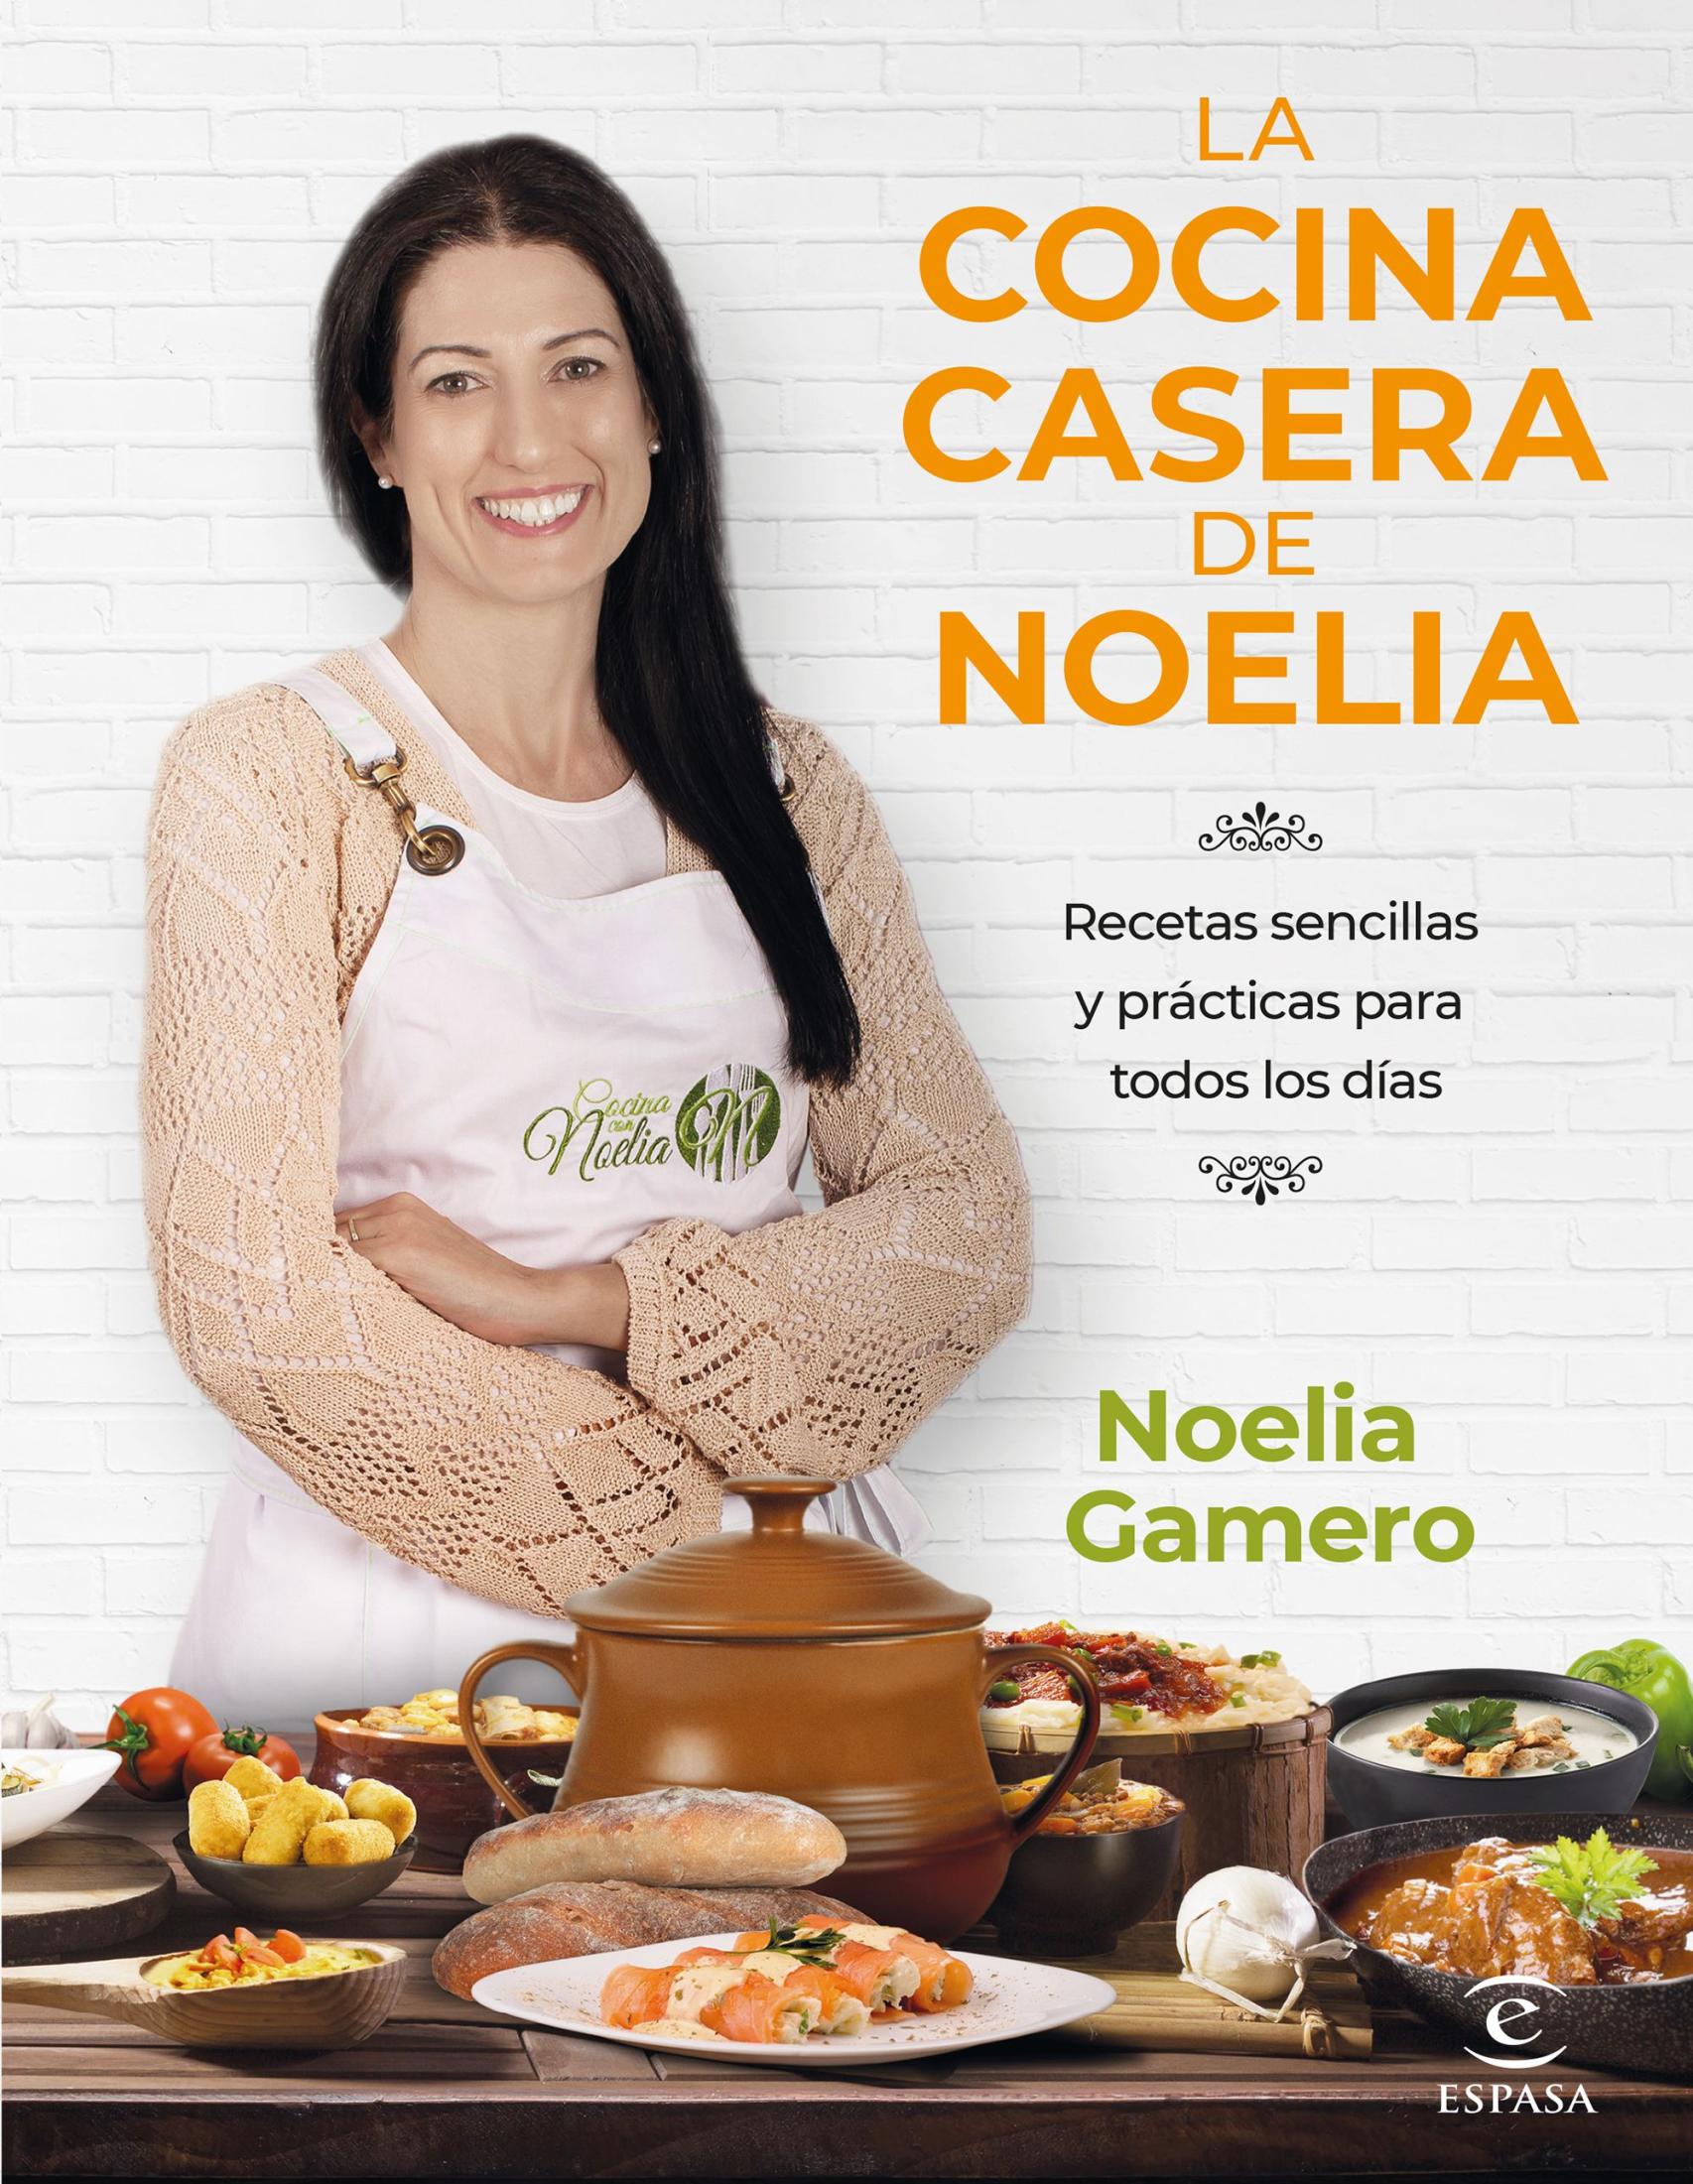 Portada del libro 'La cocina casera de Noelia'.